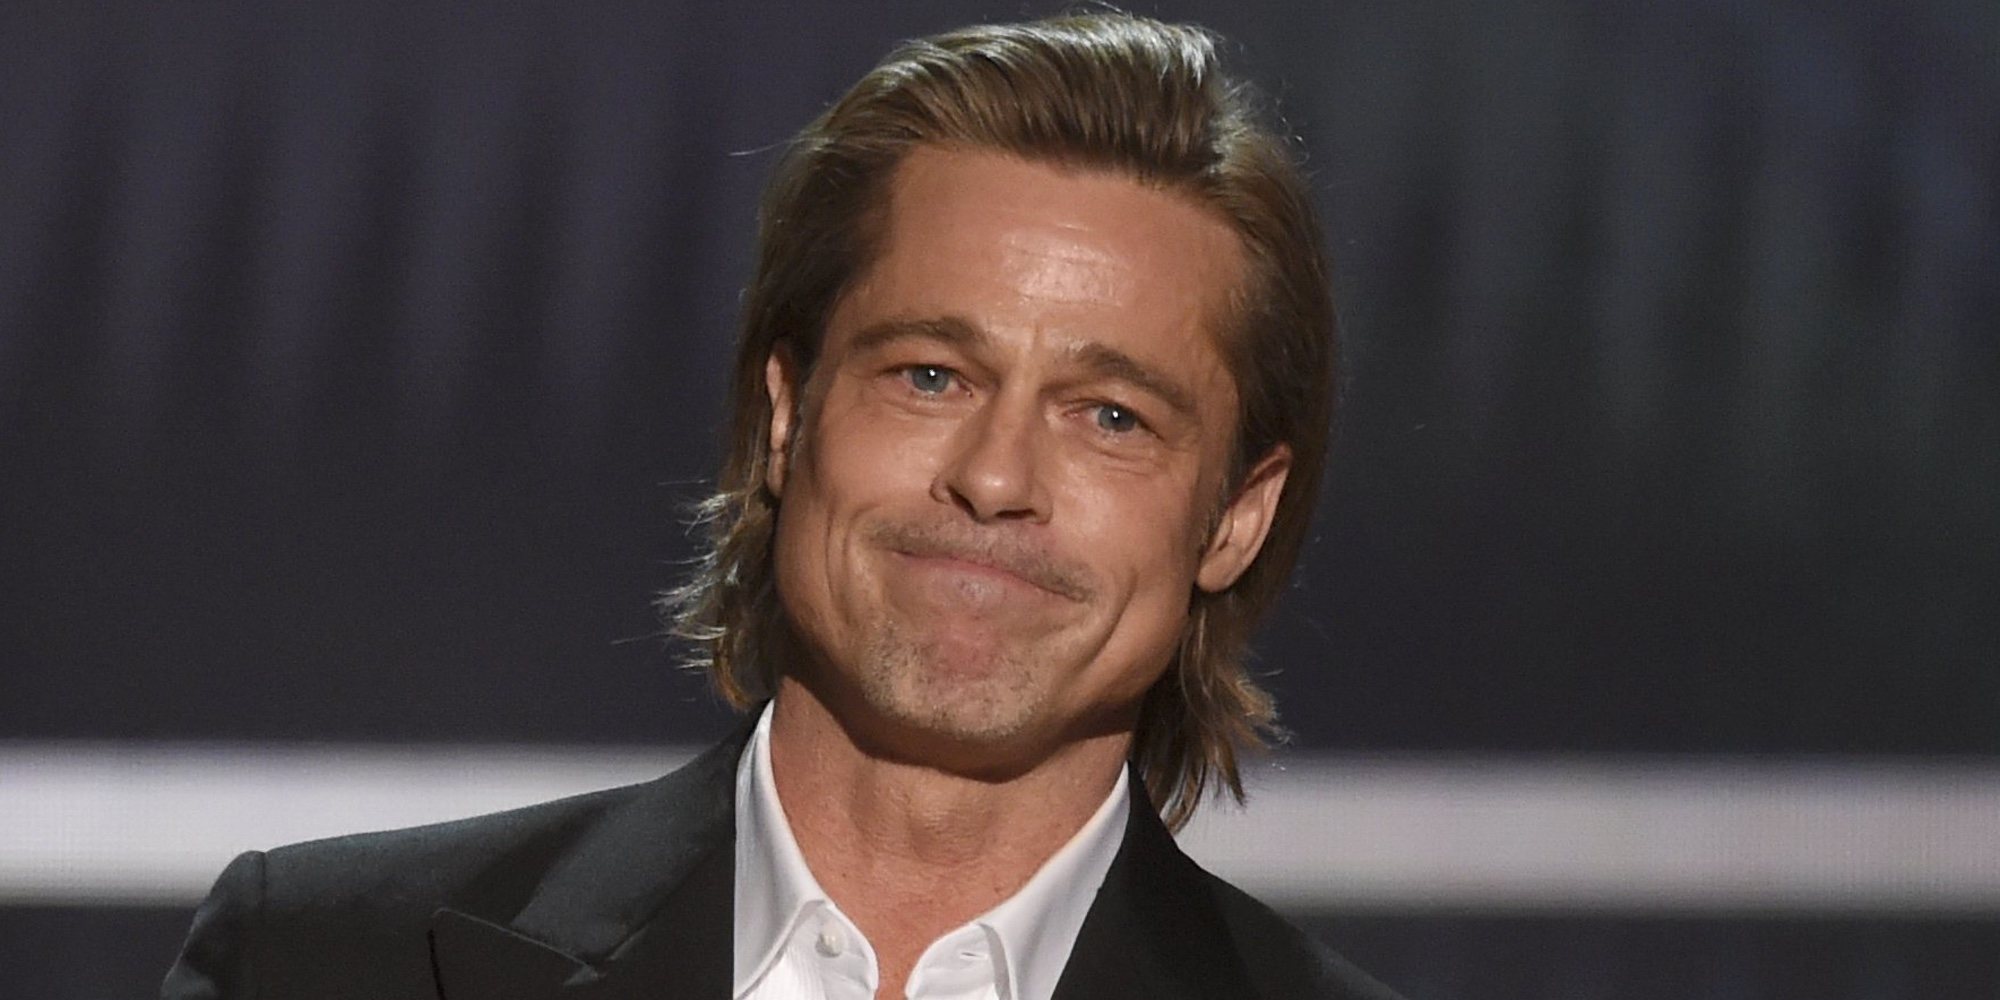 Brad Pitt, devastado tras la última decisión legal de Angelina Jolie